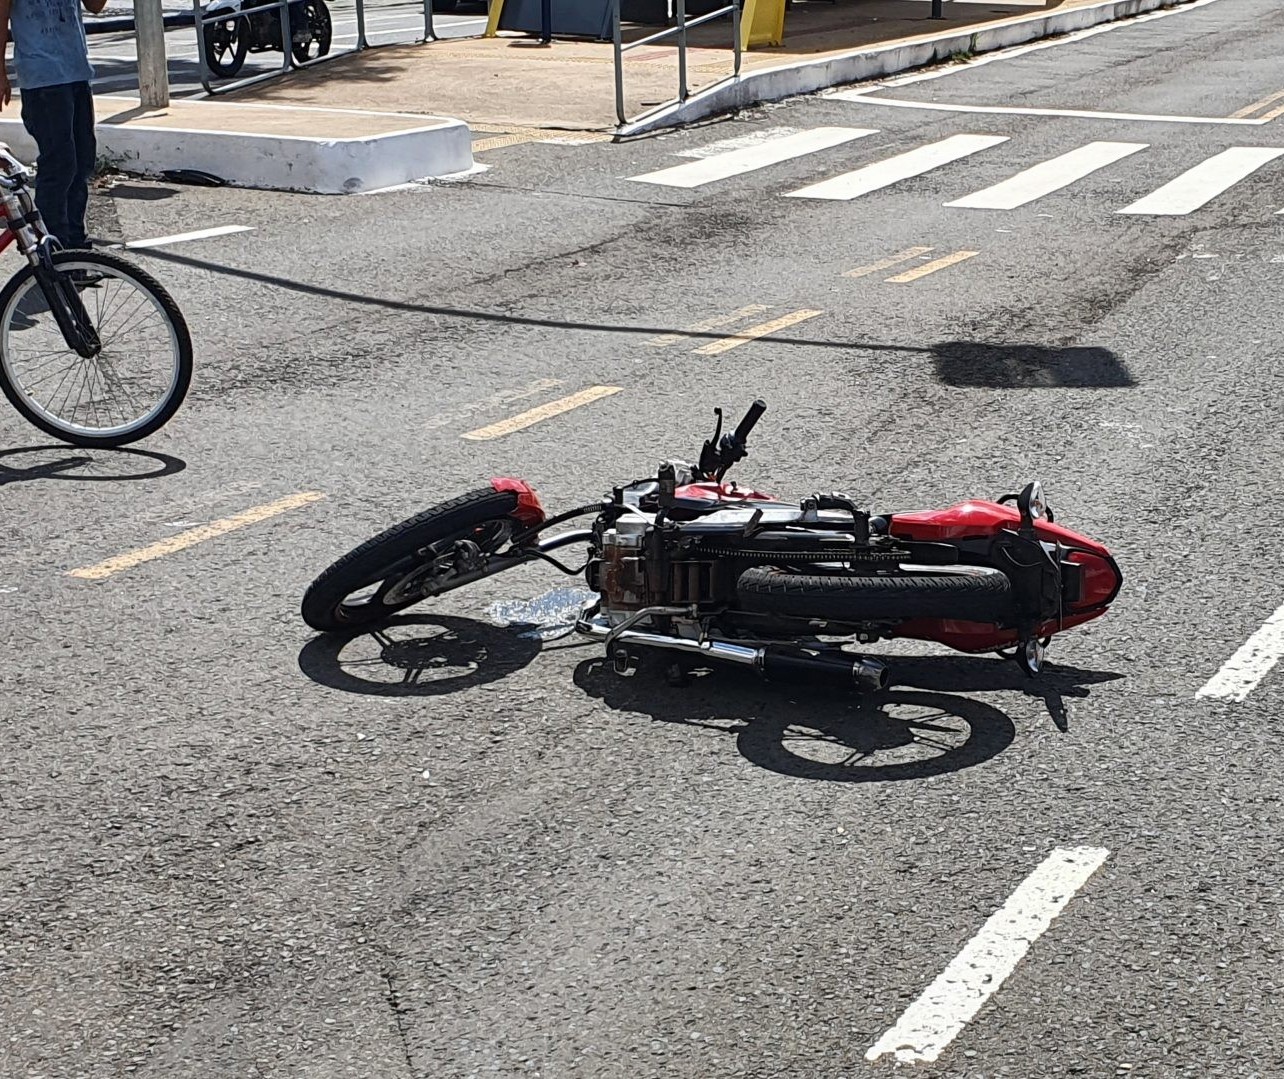 Motociclista de 21 anos é internado em estado grave após acidente em Maringá